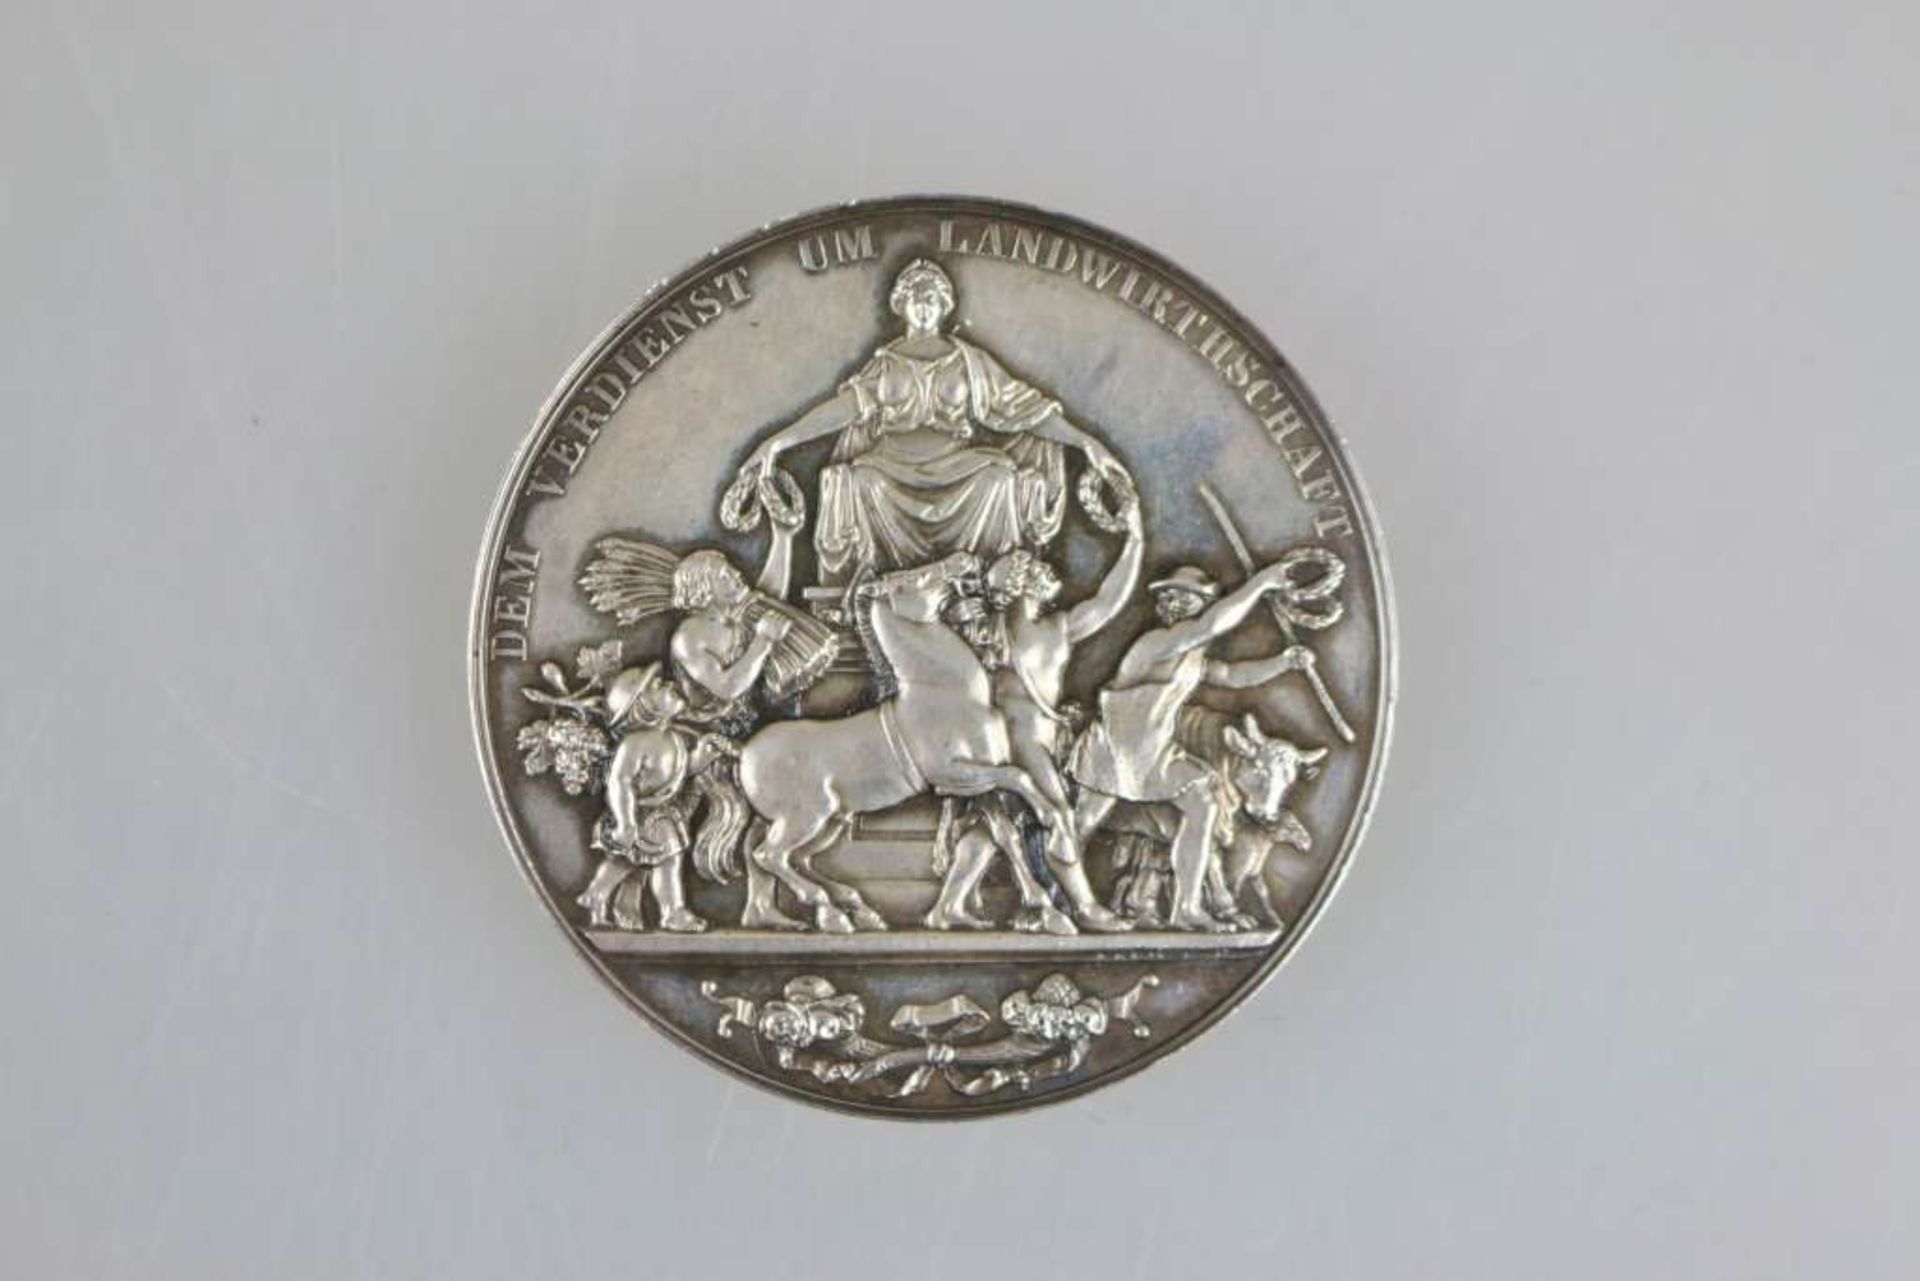 Sachsen, König Johann, Silberne Verdienstmedaille für Landwirtschaft 2. Form (nichttragbar), - Bild 3 aus 4